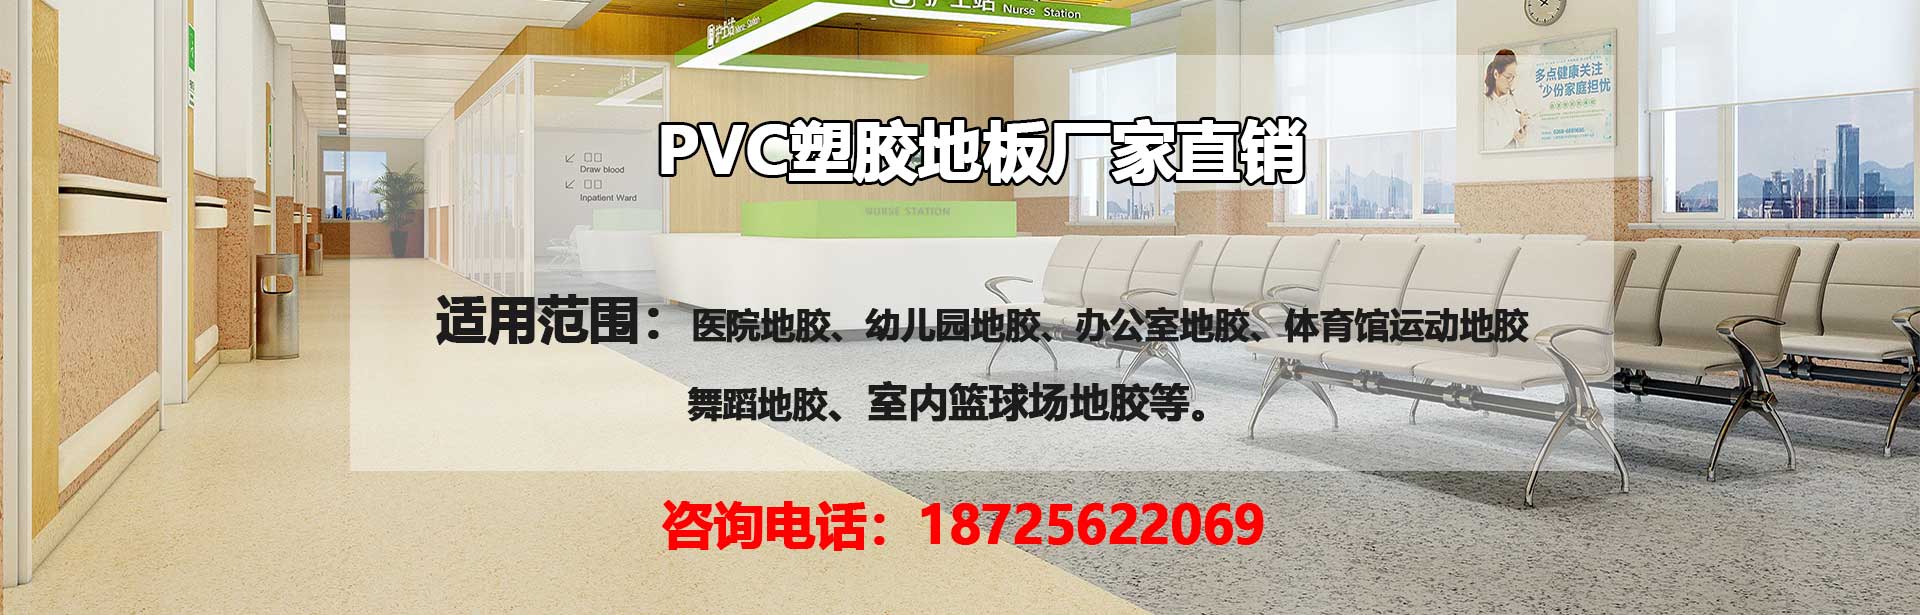 咸宁PVC塑胶地板